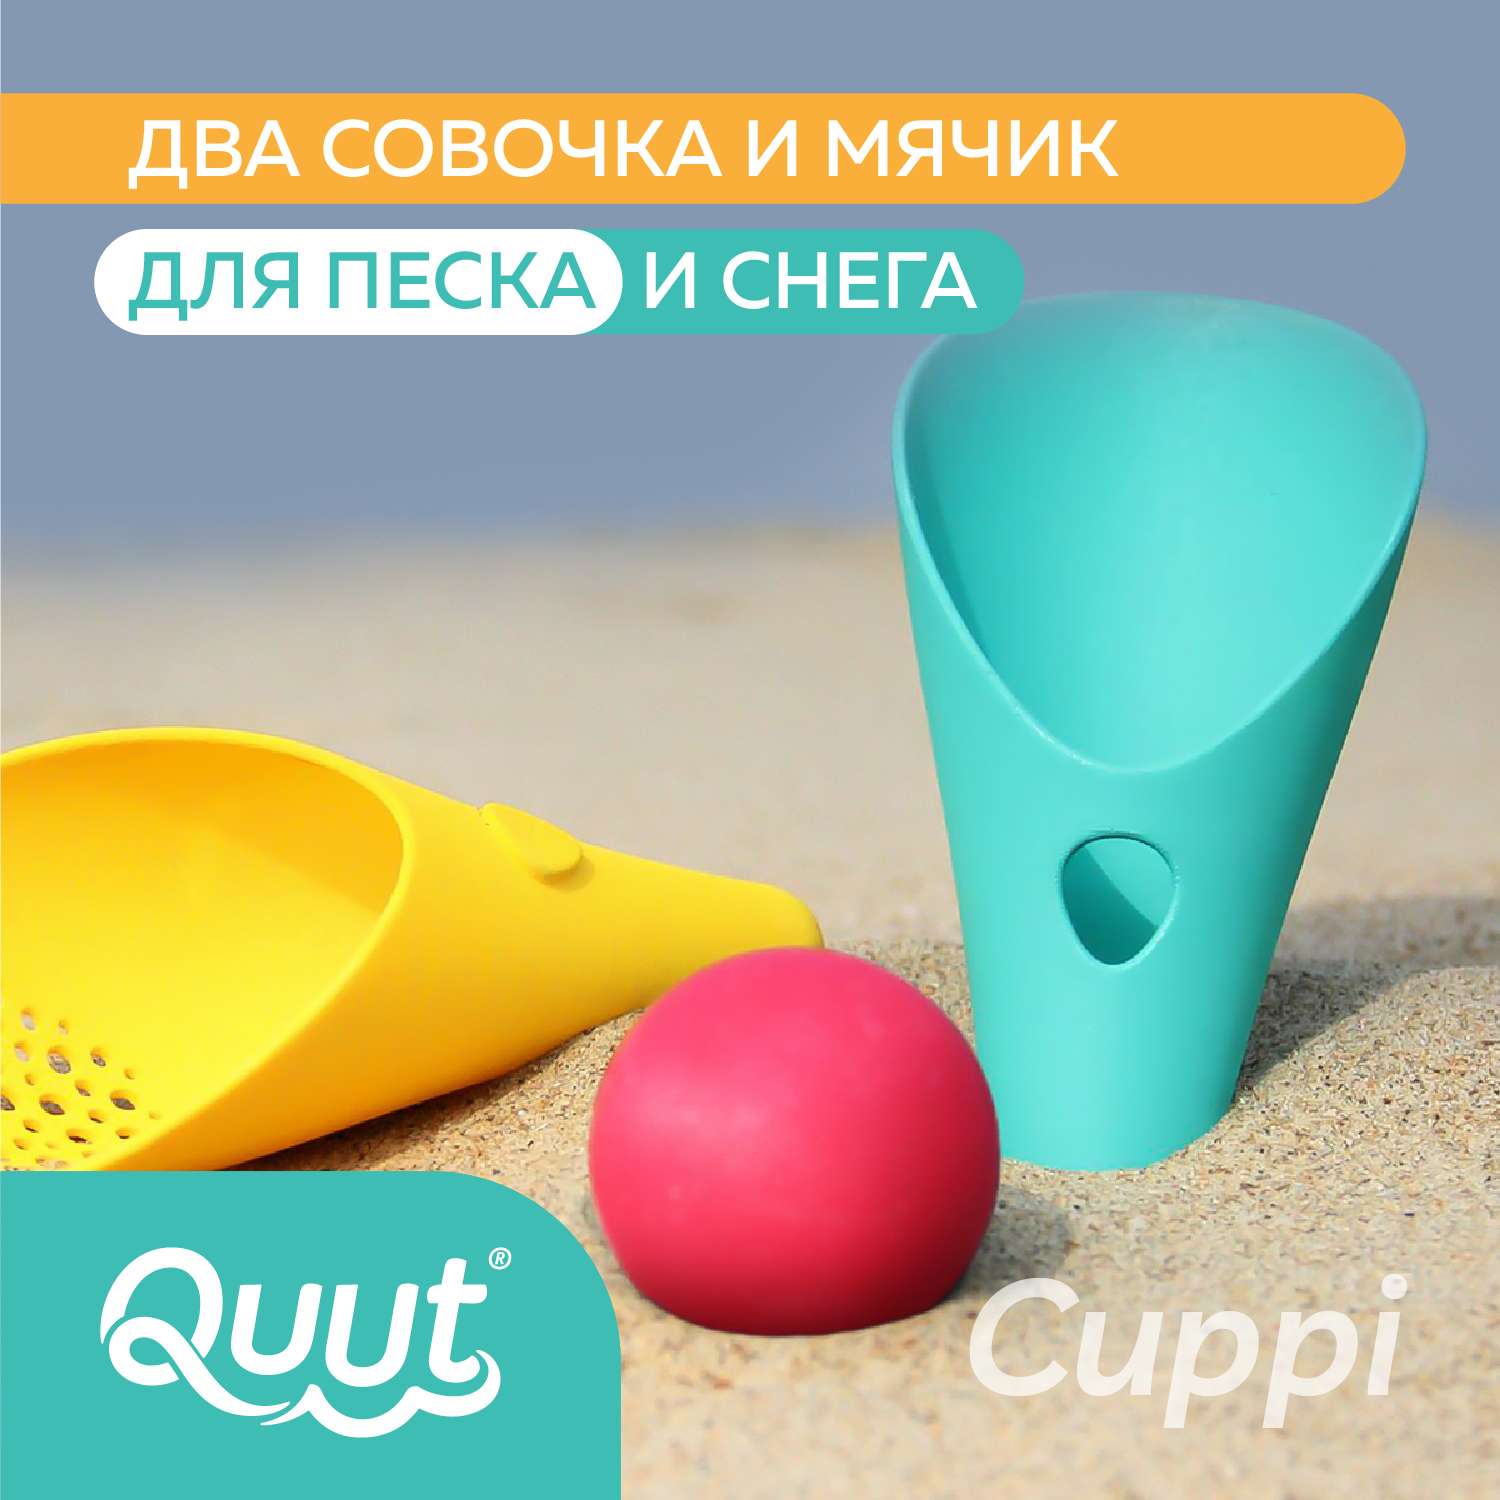 Набор для песка и снега QUUT Cuppi банановый и синий + красный мячик - фото 1